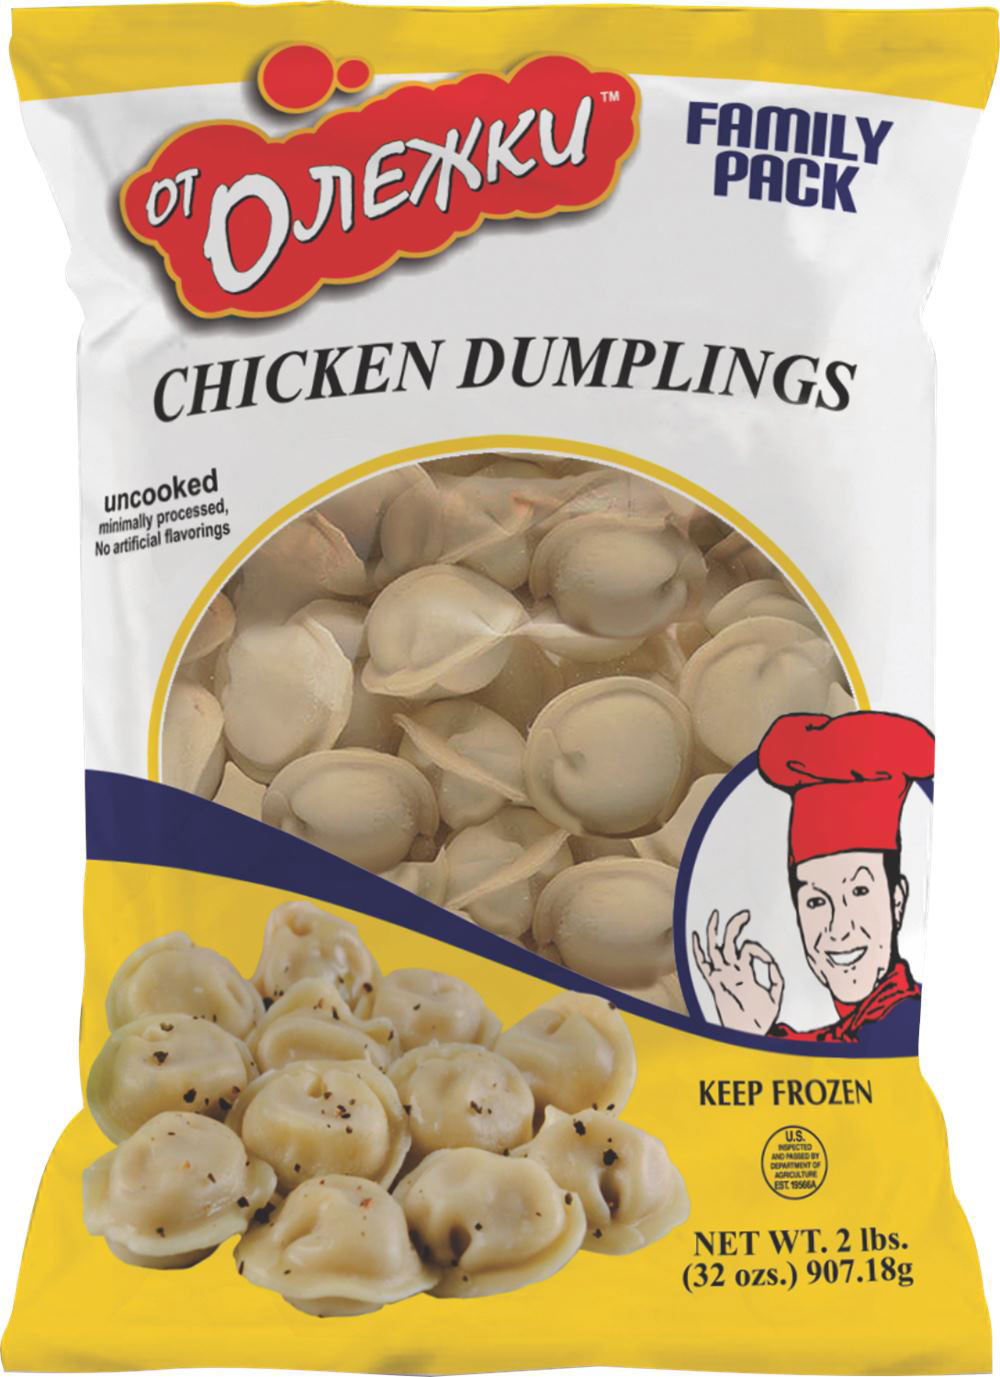 100% Chicken Dumplings